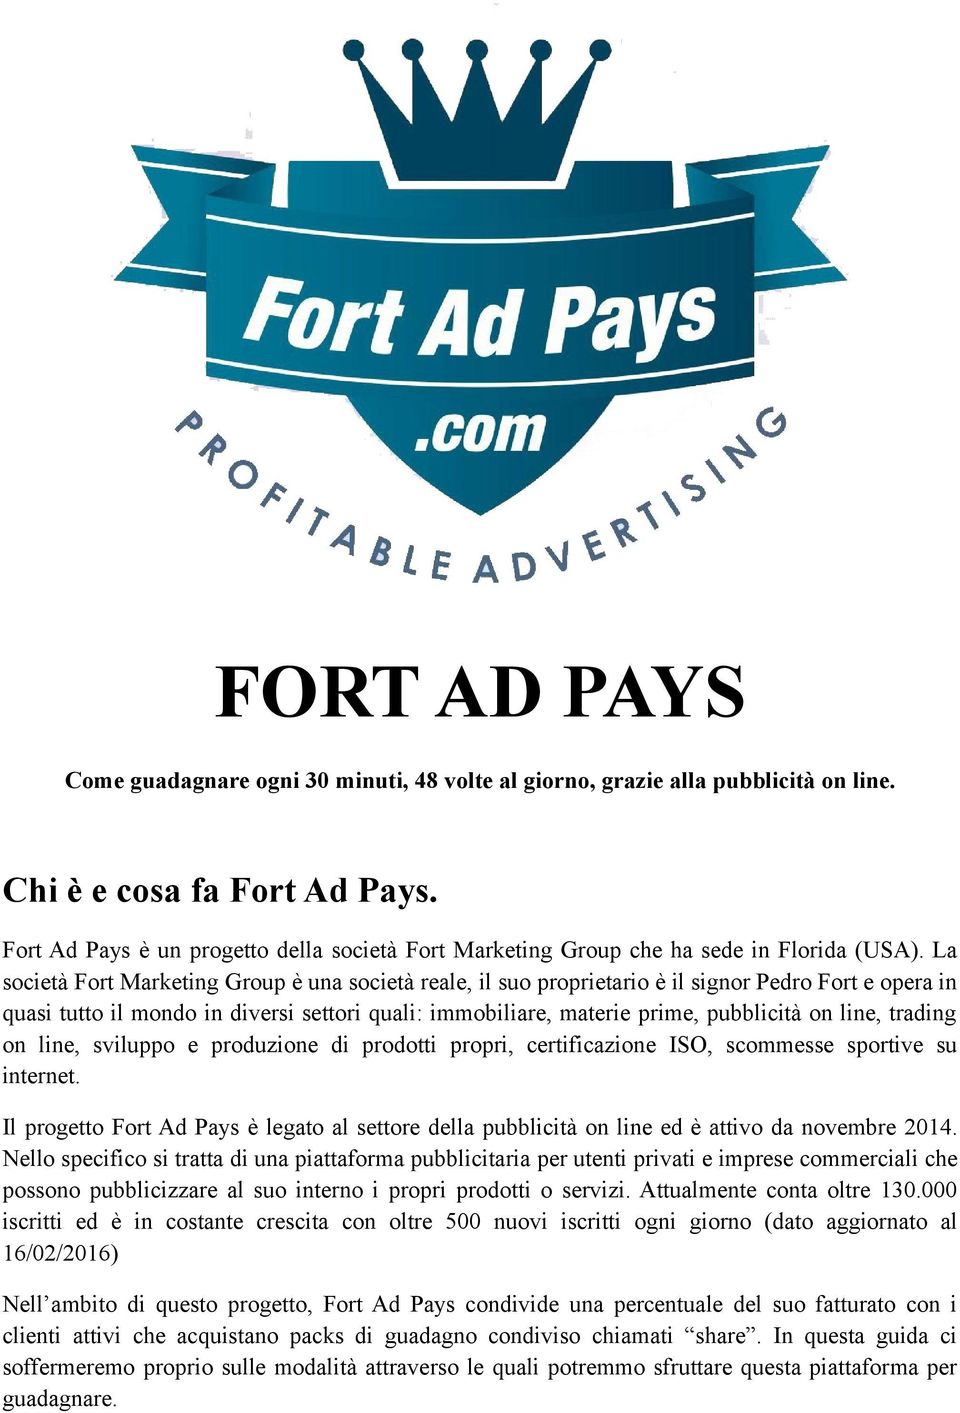 La società Fort Marketing Group è una società reale, il suo proprietario è il signor Pedro Fort e opera in quasi tutto il mondo in diversi settori quali: immobiliare, materie prime, pubblicità on